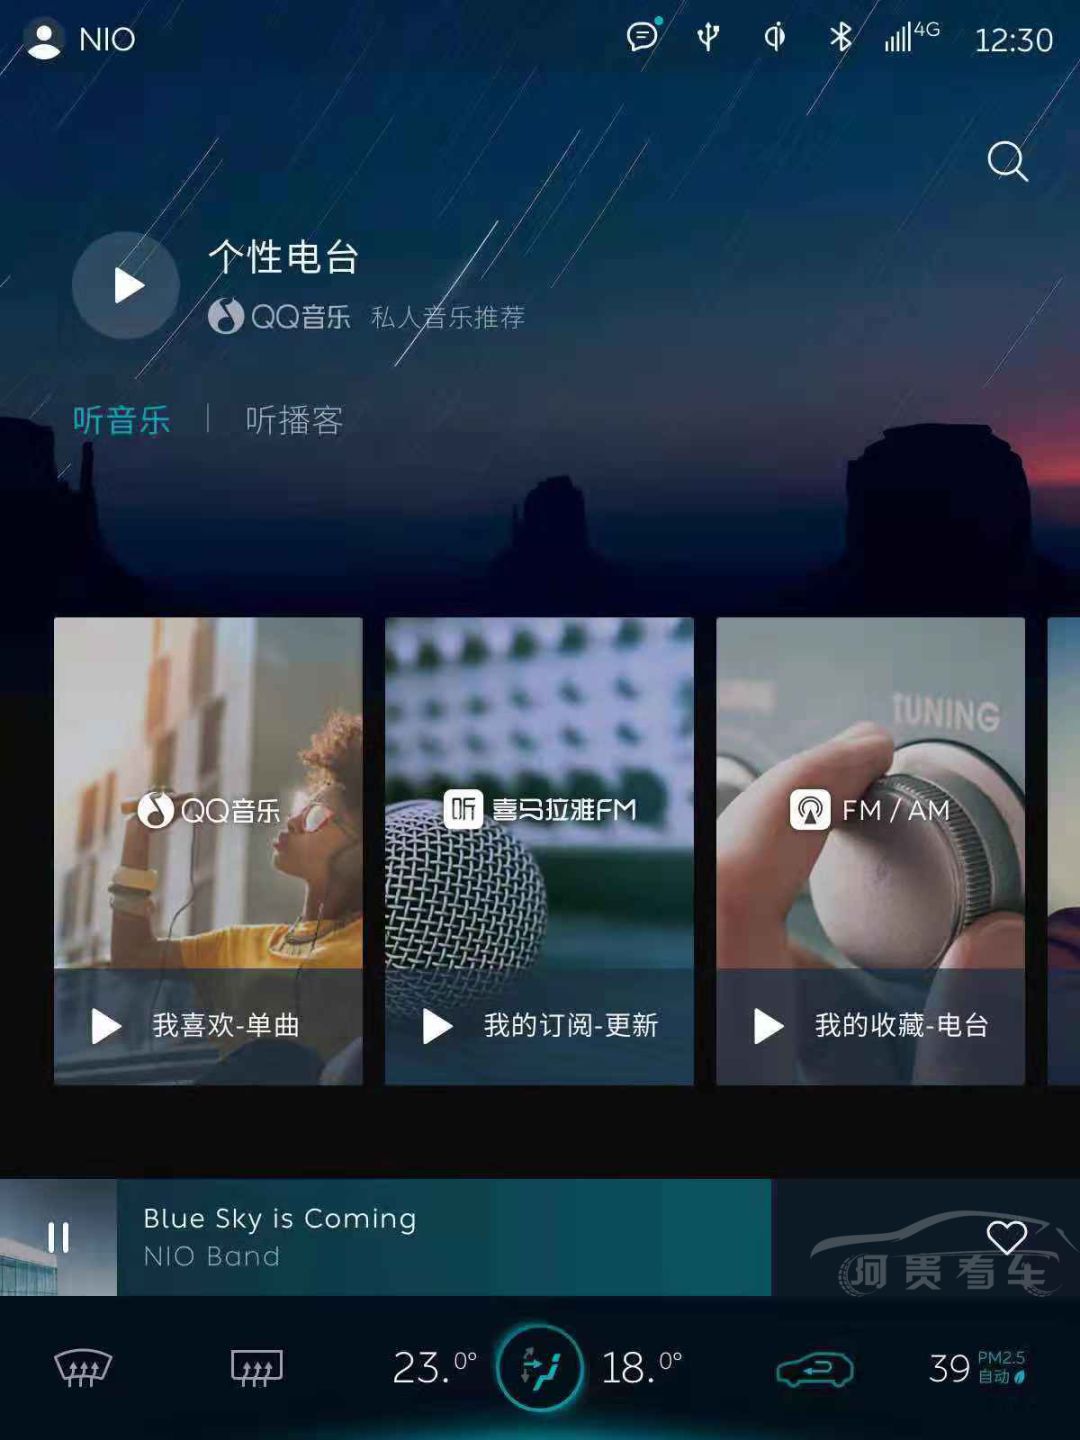 聚焦丨助力车载音乐服务升级,QQ音乐在广州车